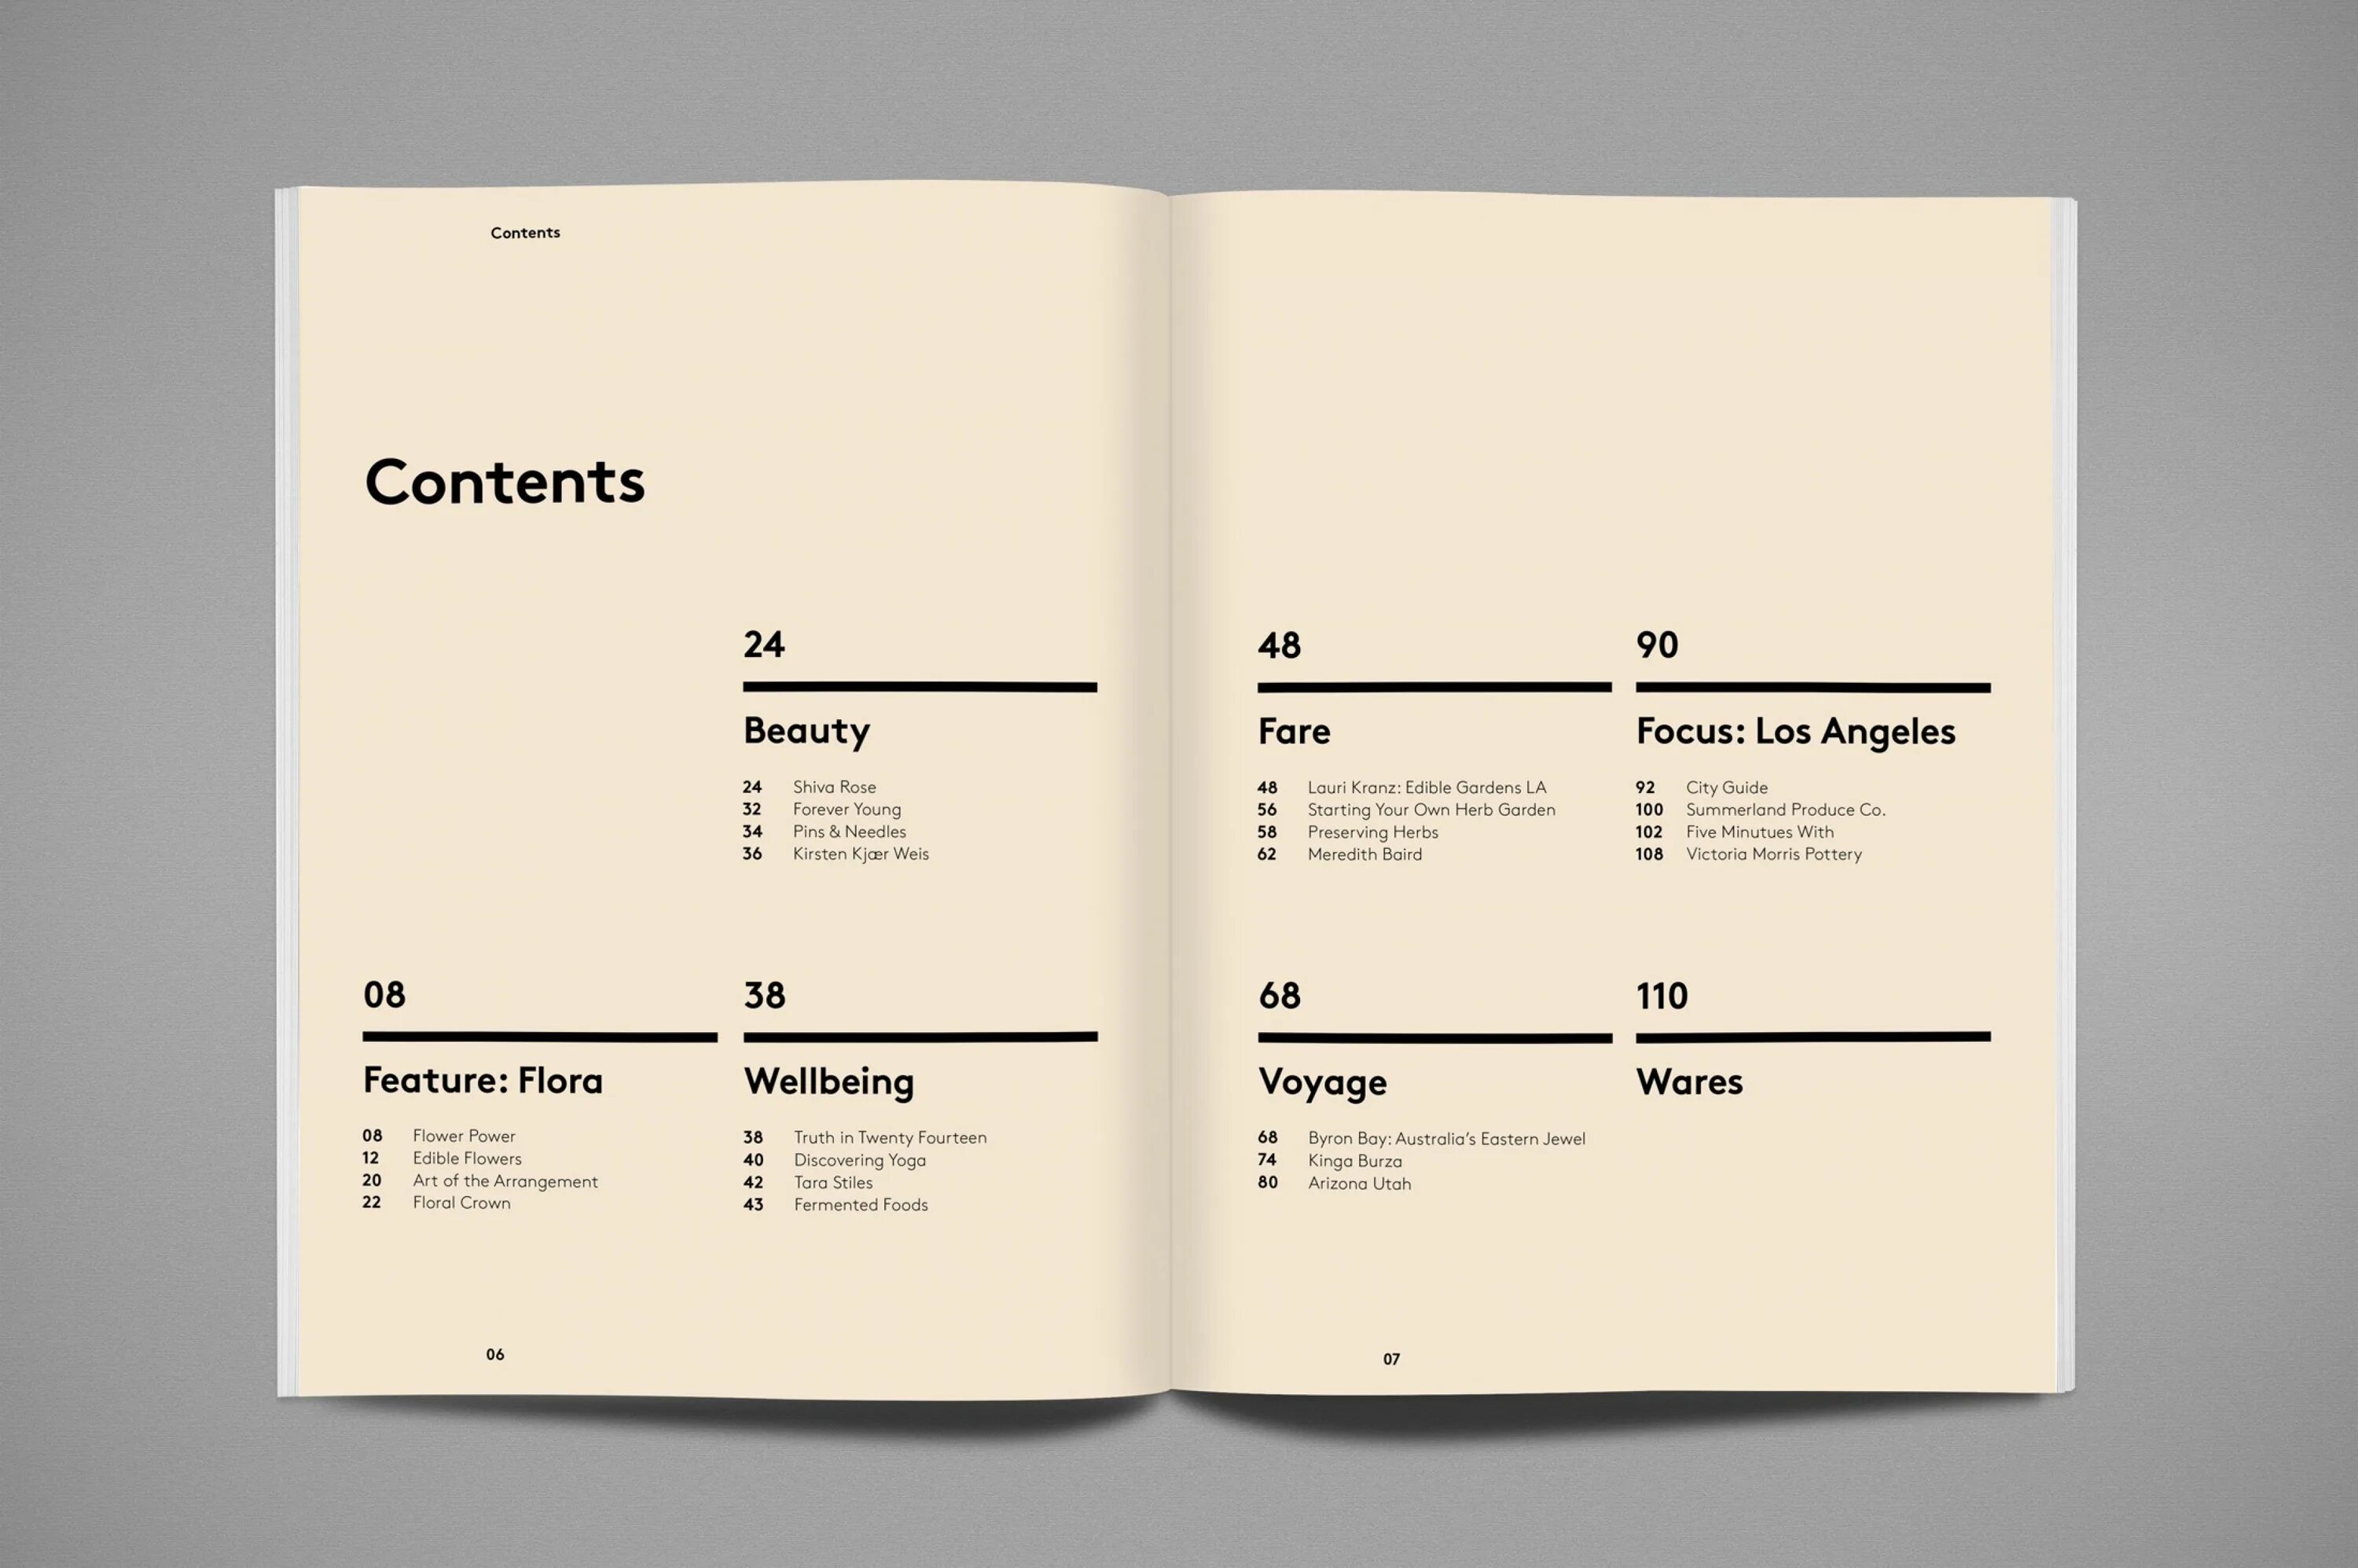 Содержание книги дизайн. Верстка содержания книги. Дизайн страниц книги. Дизайн оглавления книги. Content layout